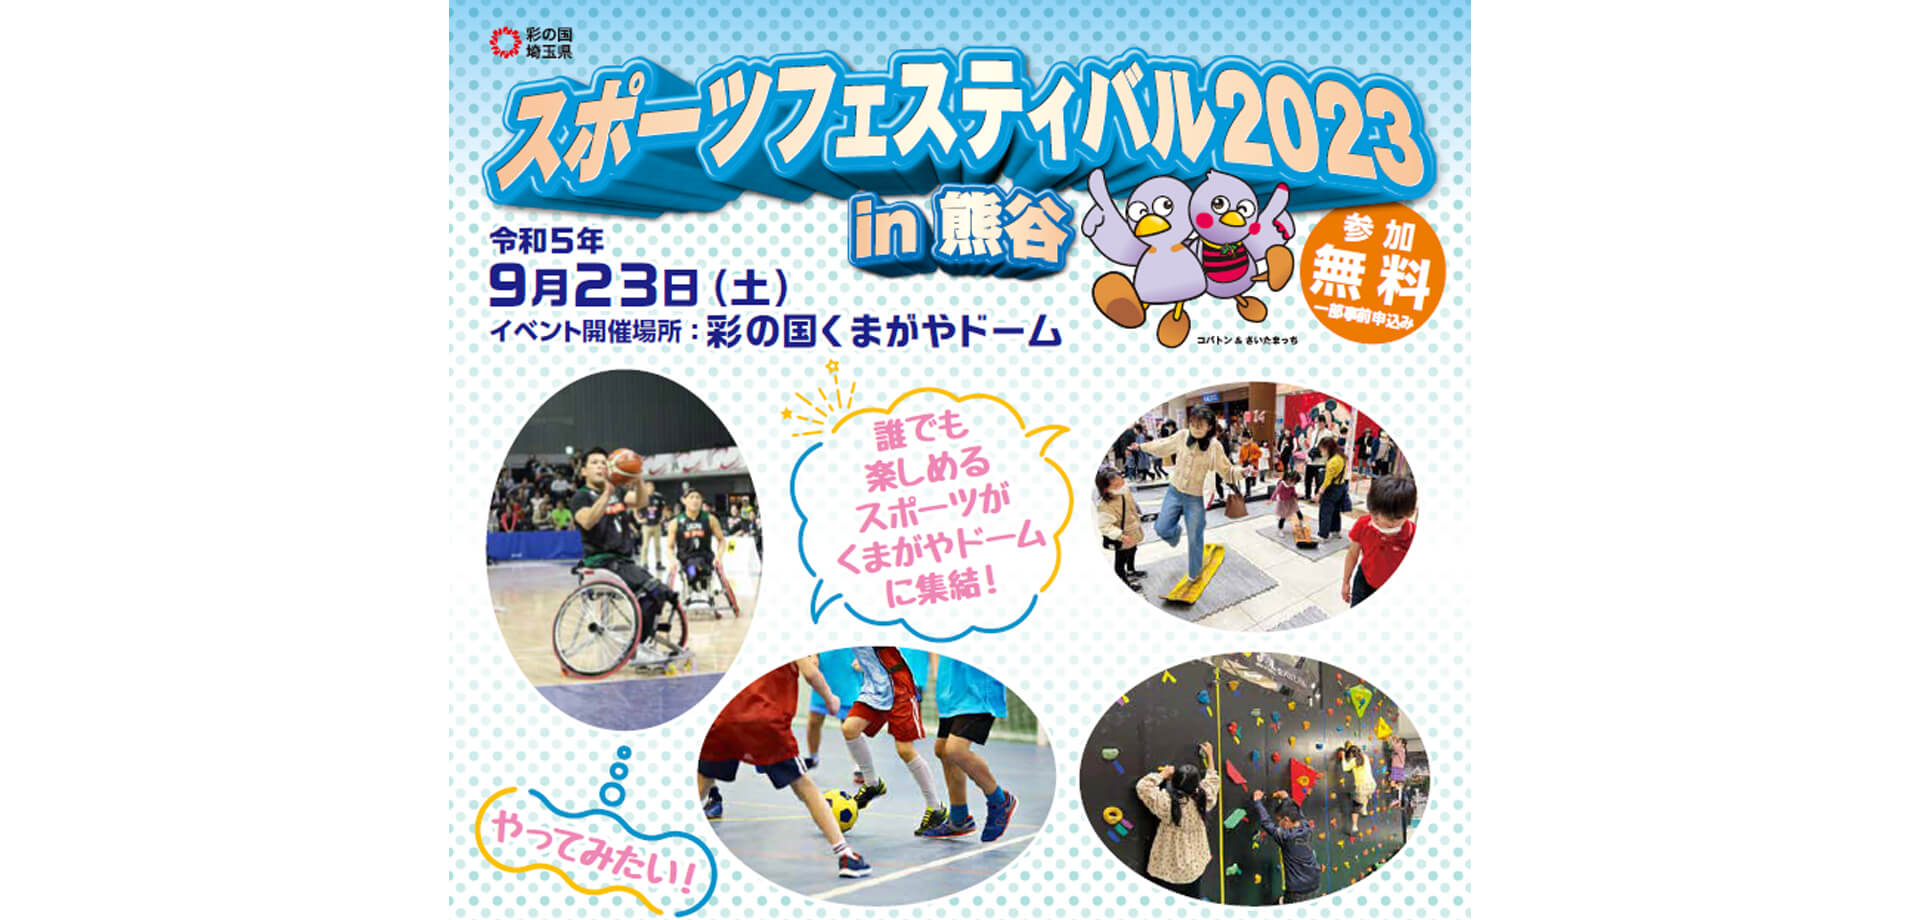 埼玉県スポーツフェスティバル2023 in熊谷ポスター